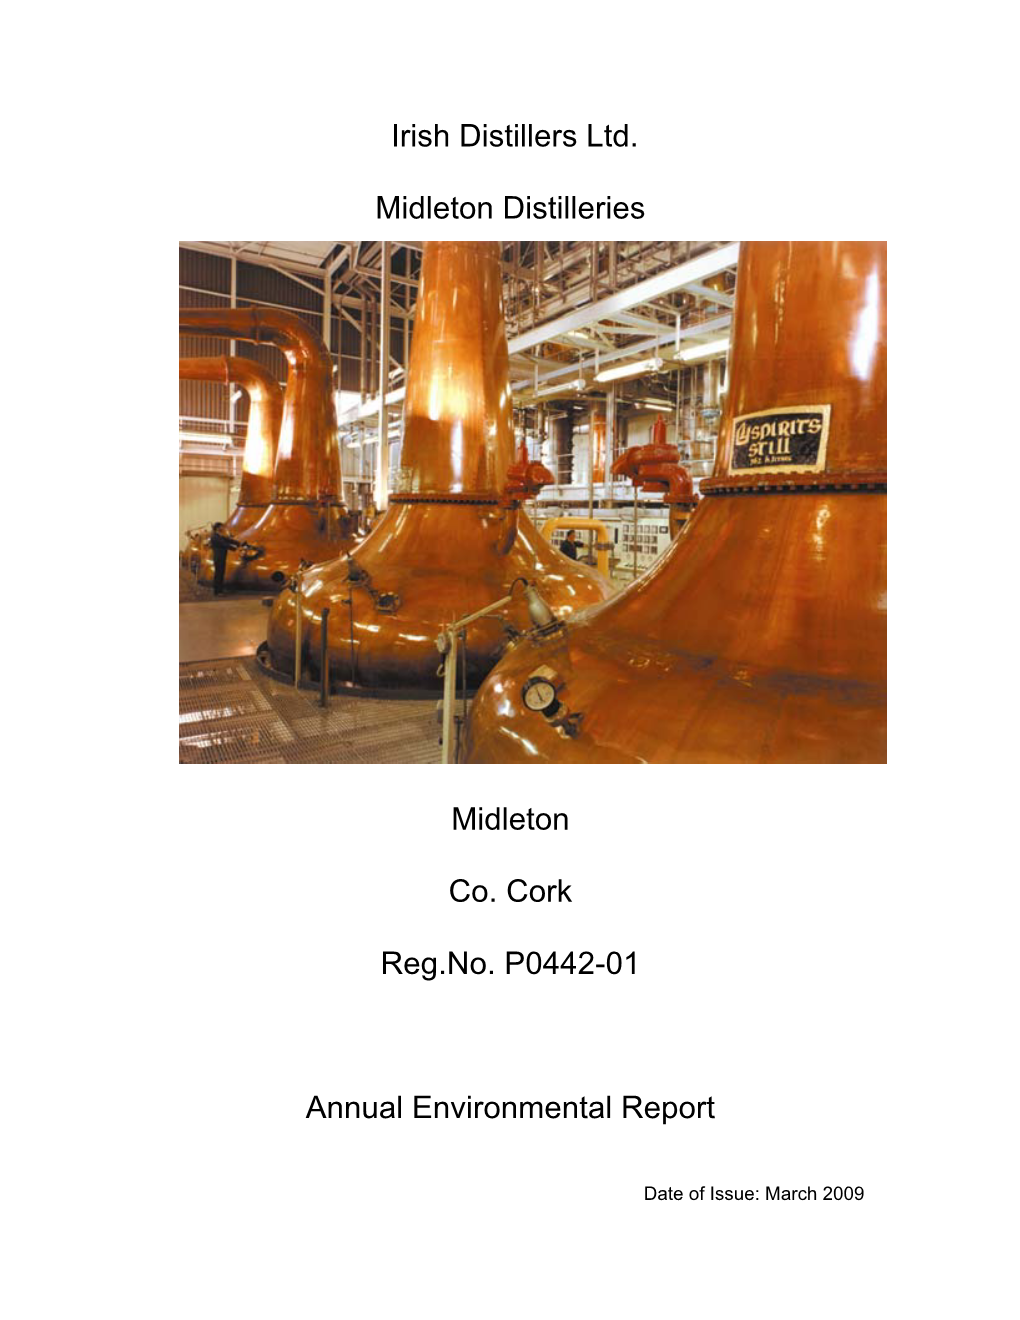 Irish Distillers Ltd. Midleton Distilleries Midleton Co. Cork Reg.No. P0442